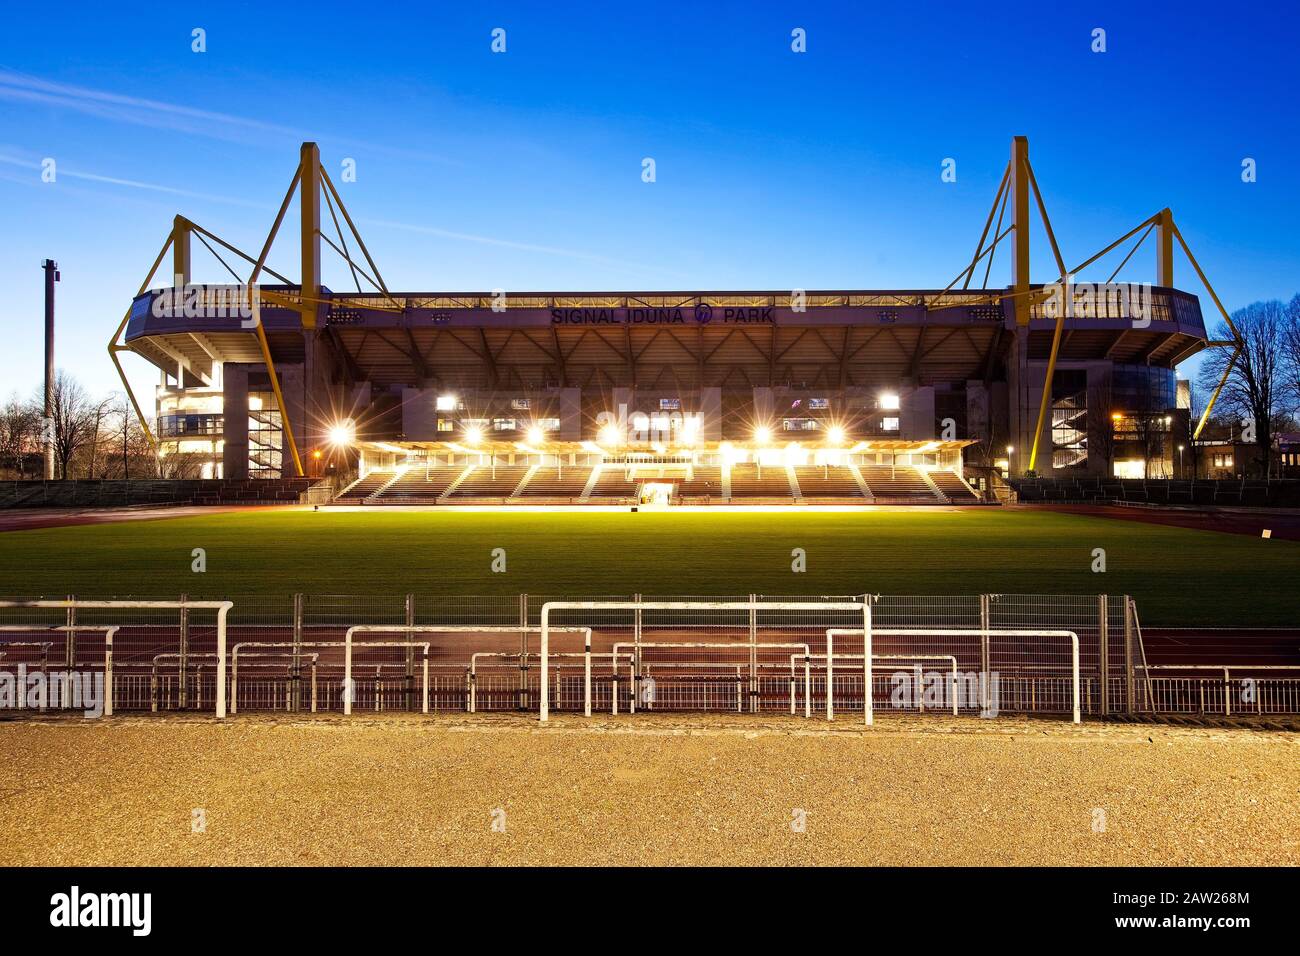 Stadion Rote Erde und Signal Iduna Park Fußballstadion am Abend, Deutschland, Nordrhein-Westfalen, Ruhrgebiet, Dortmund Stockfoto